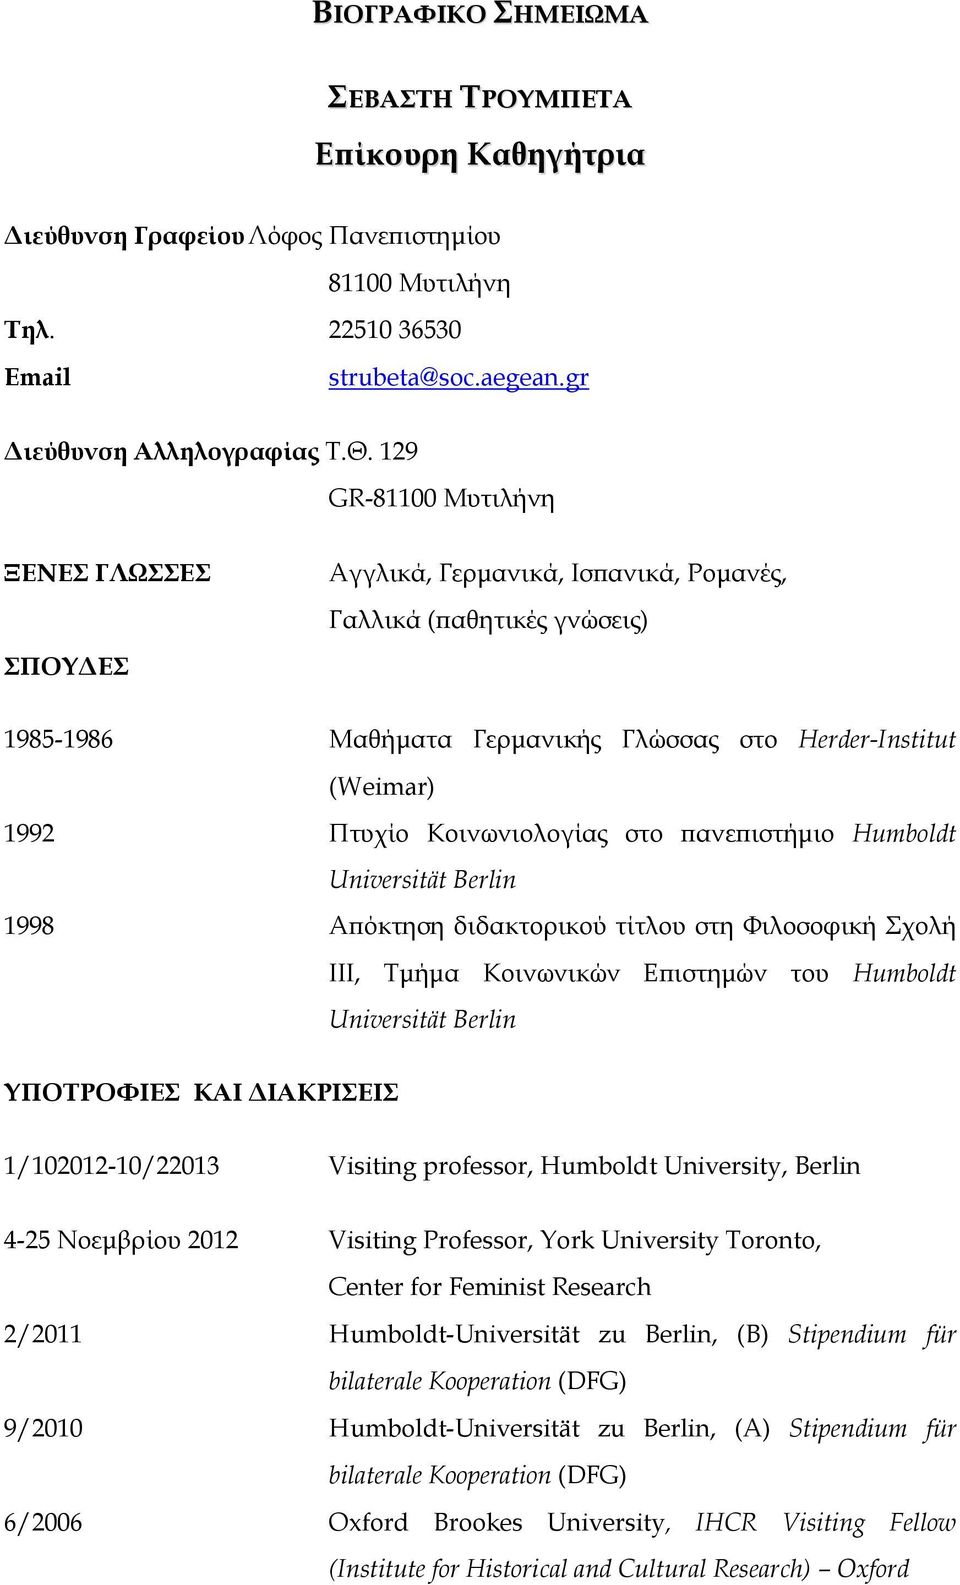 Κοινωνιολογίας στο πανεπιστήμιο Humboldt Universität Berlin 1998 Απόκτηση διδακτορικού τίτλου στη Φιλοσοφική Σχολή ΙΙΙ, Τμήμα Κοινωνικών Επιστημών του Humboldt Universität Berlin ΥΠΟΤΡΟΦΙΕΣ ΚΑΙ